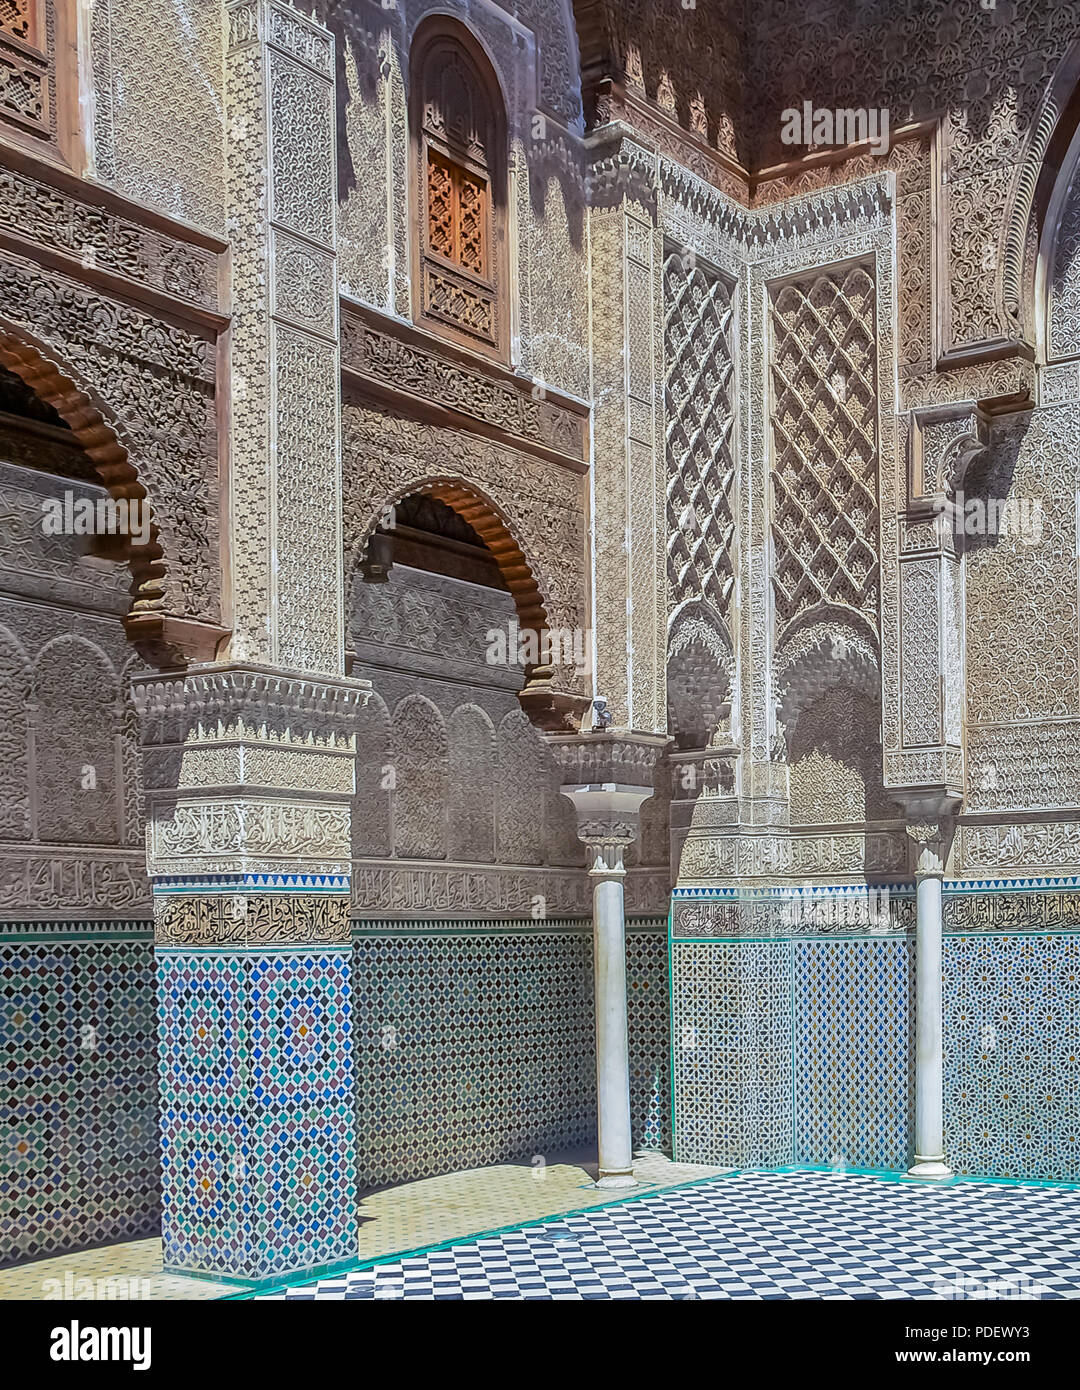 Fes, Maroc - 11 mai 2013 : plâtre sculpté marocain arabesque et mosaïque de la 14e siècle El Attarine médersa de Fès, Maroc Banque D'Images